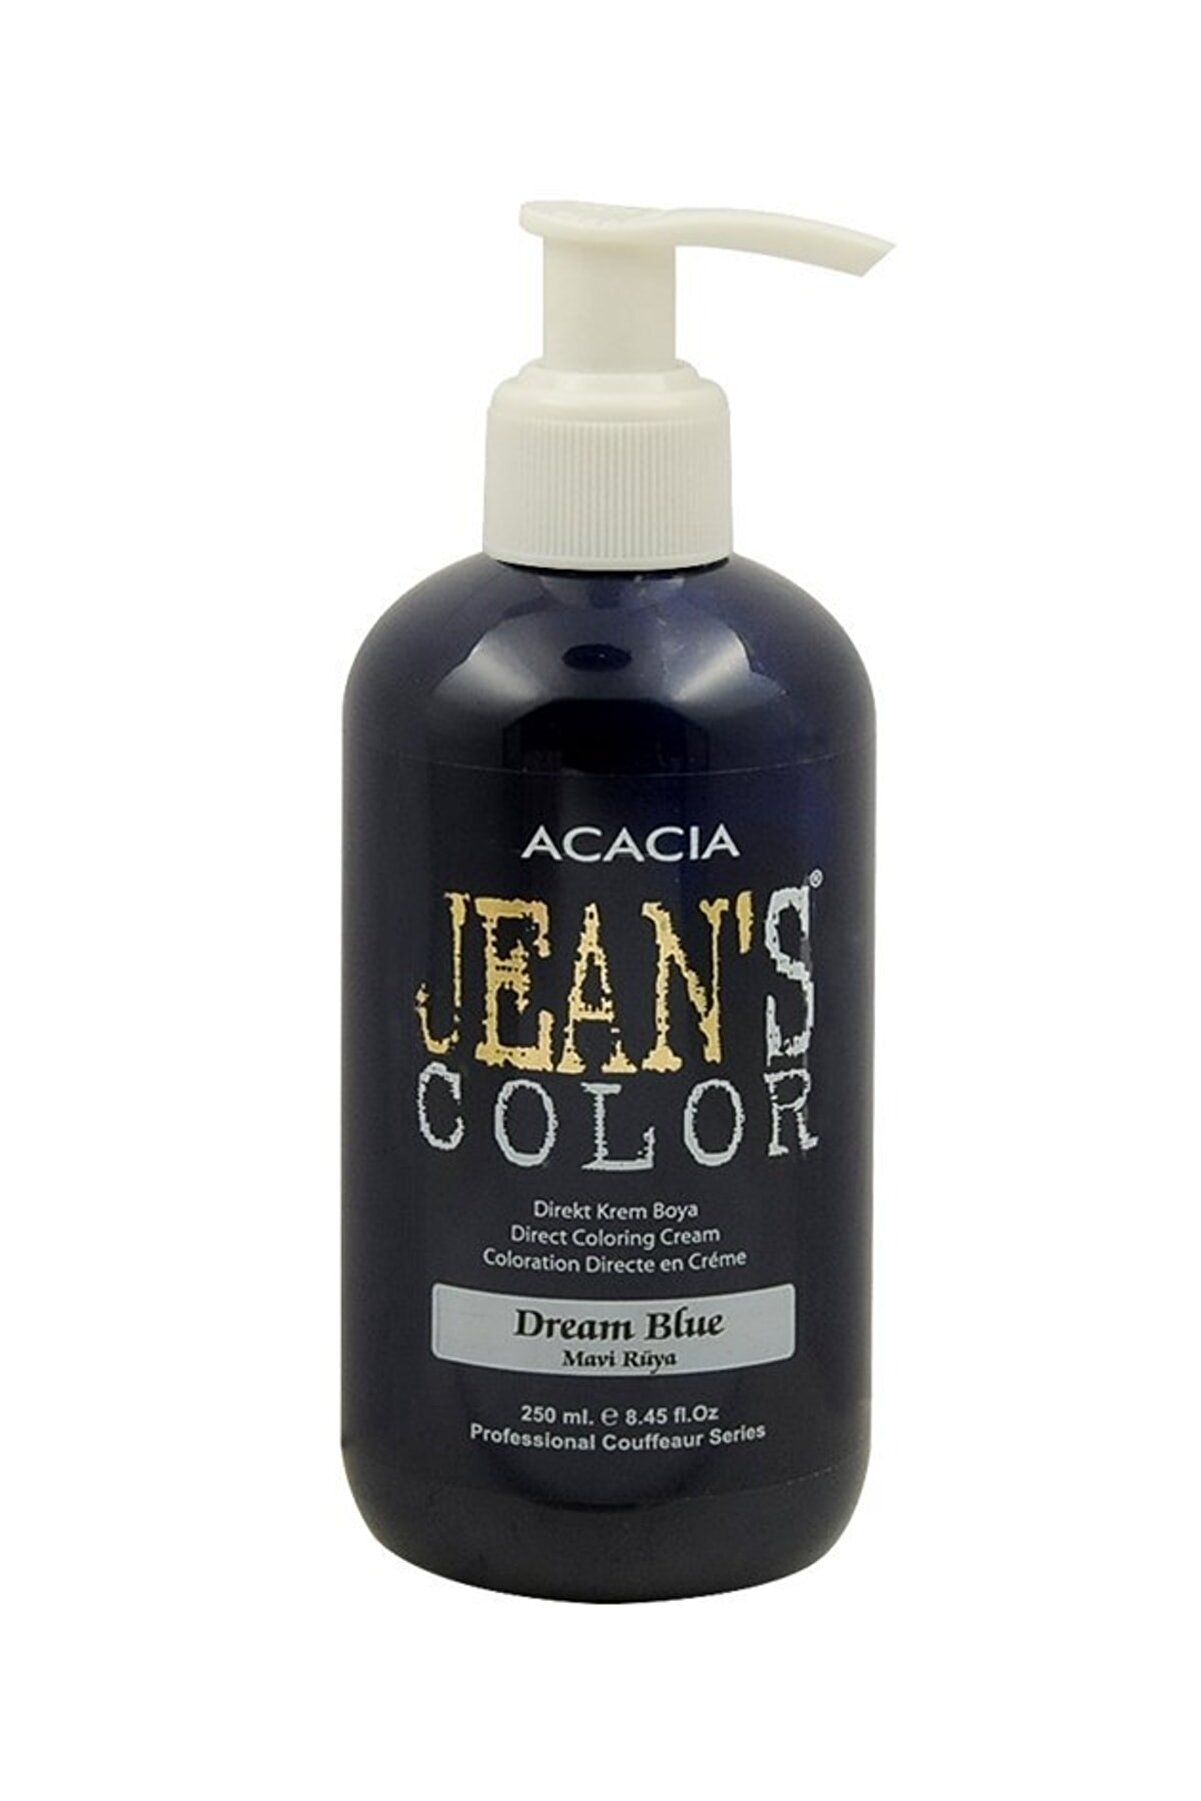 Acacia Jeans Color Mavi Rüya Saç Boyası 250 ml Dream Blue Amonyaksız Balyaj Renkli Saç Boyası